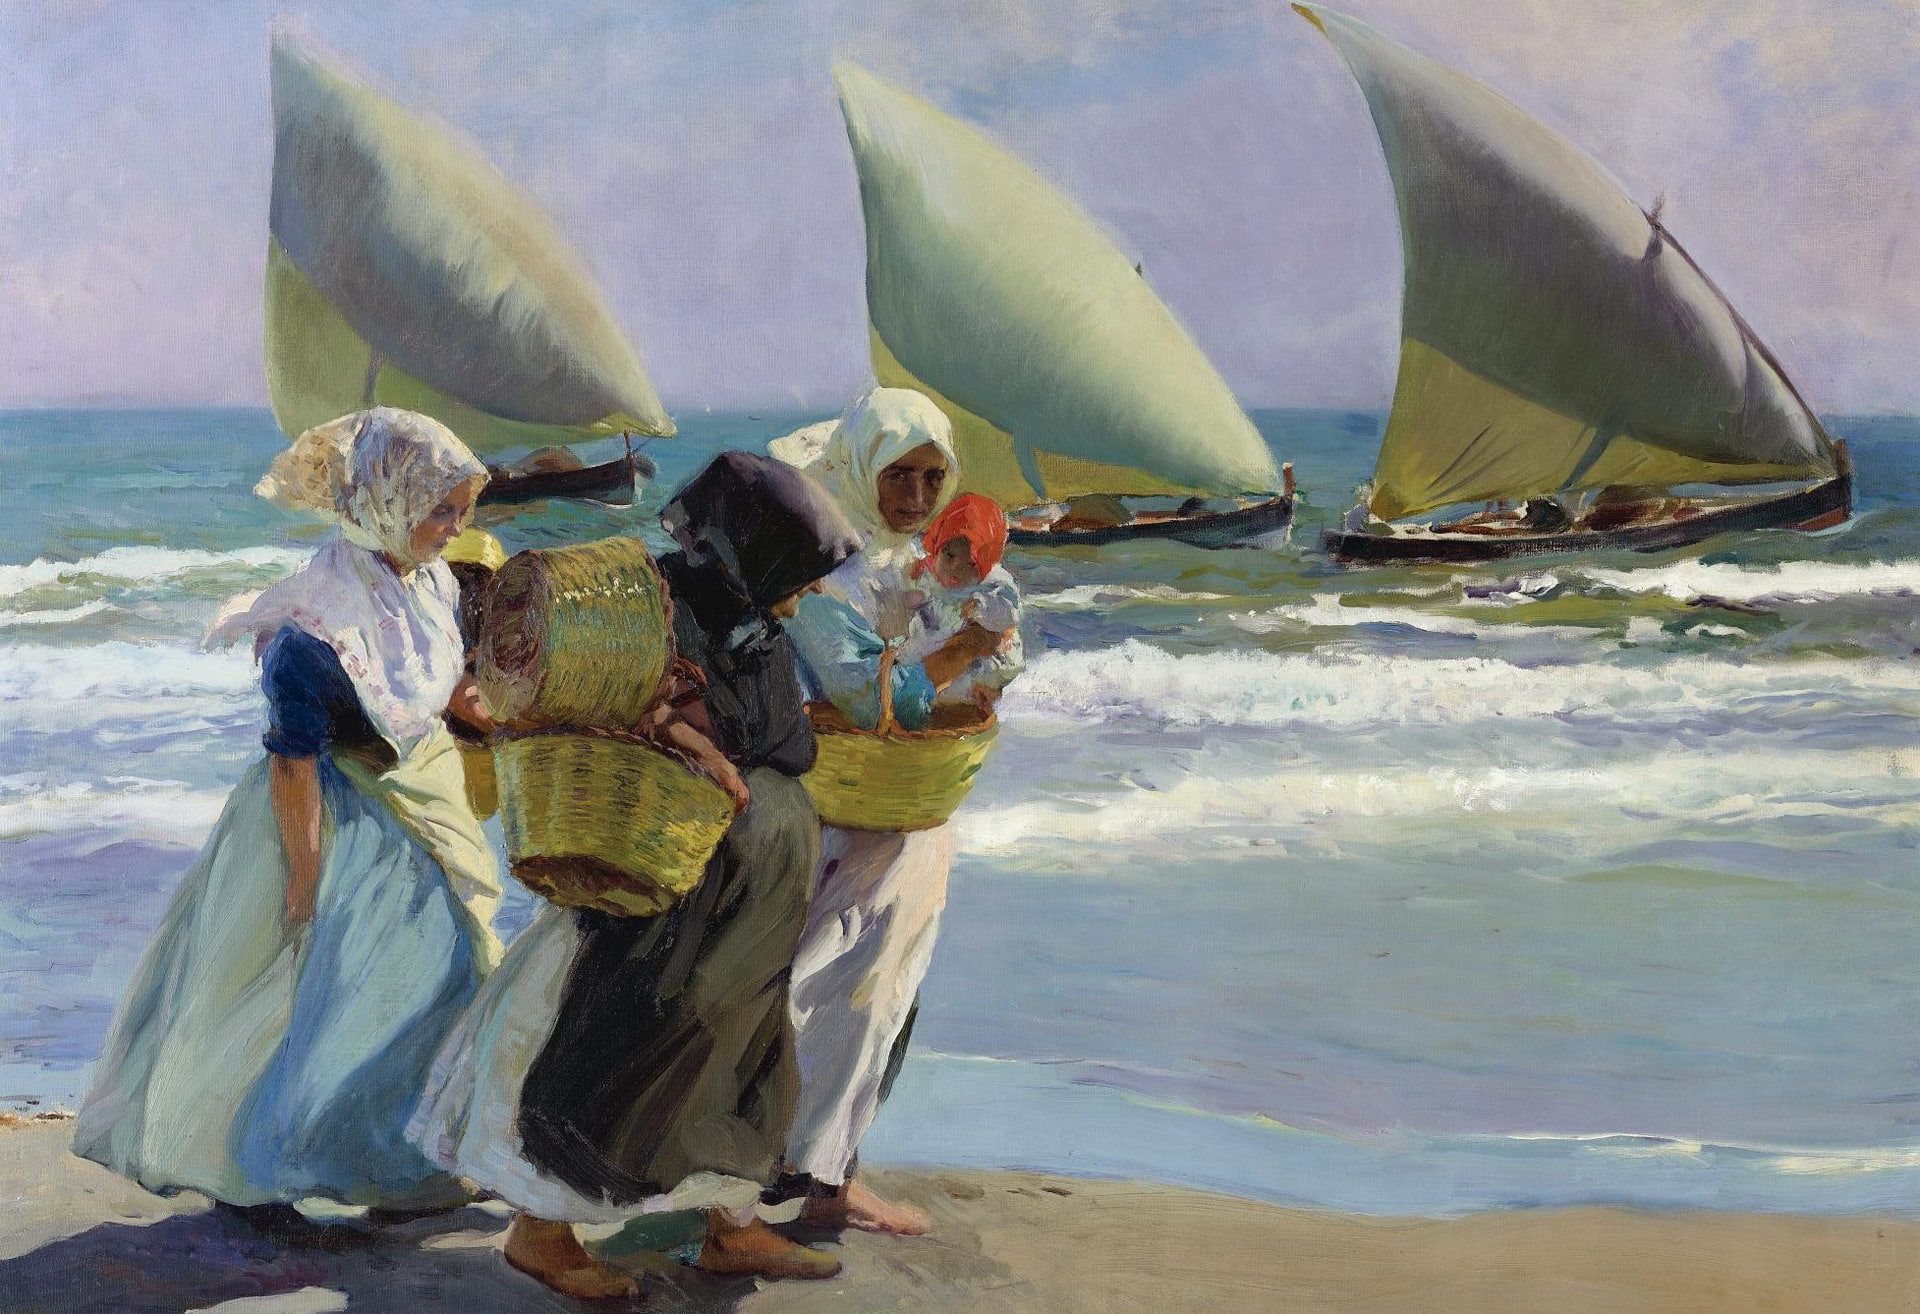 women, shore, boat, picture, sail, seascape, genre, Joaquin Sorolla